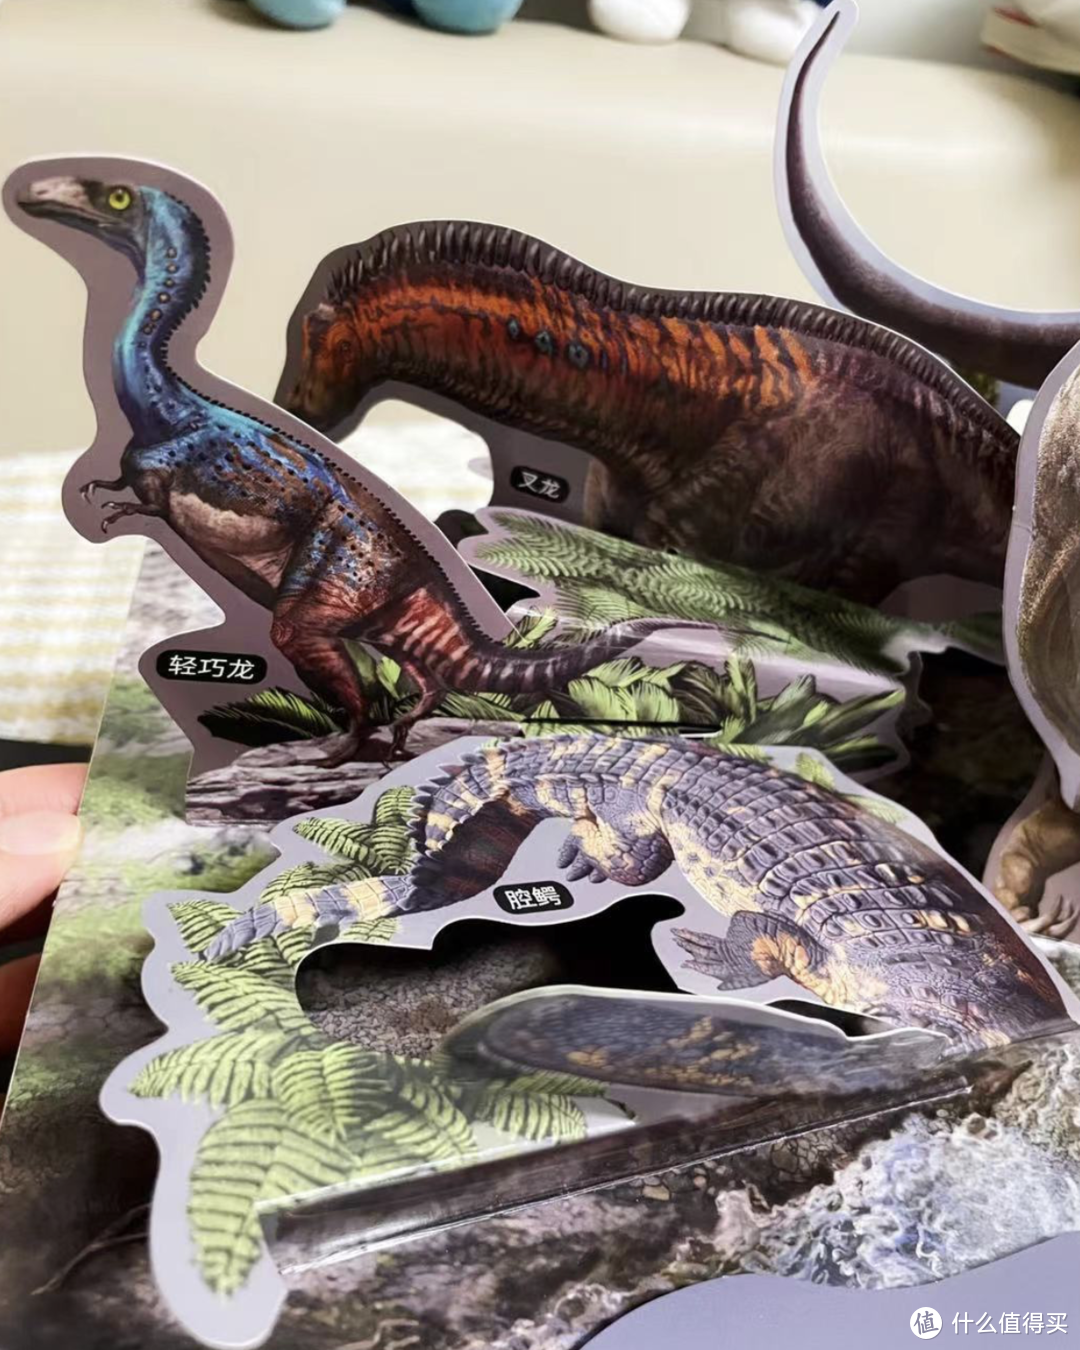 我和儿子的恐龙探秘之旅～关于恐龙的一切你都知道吗？